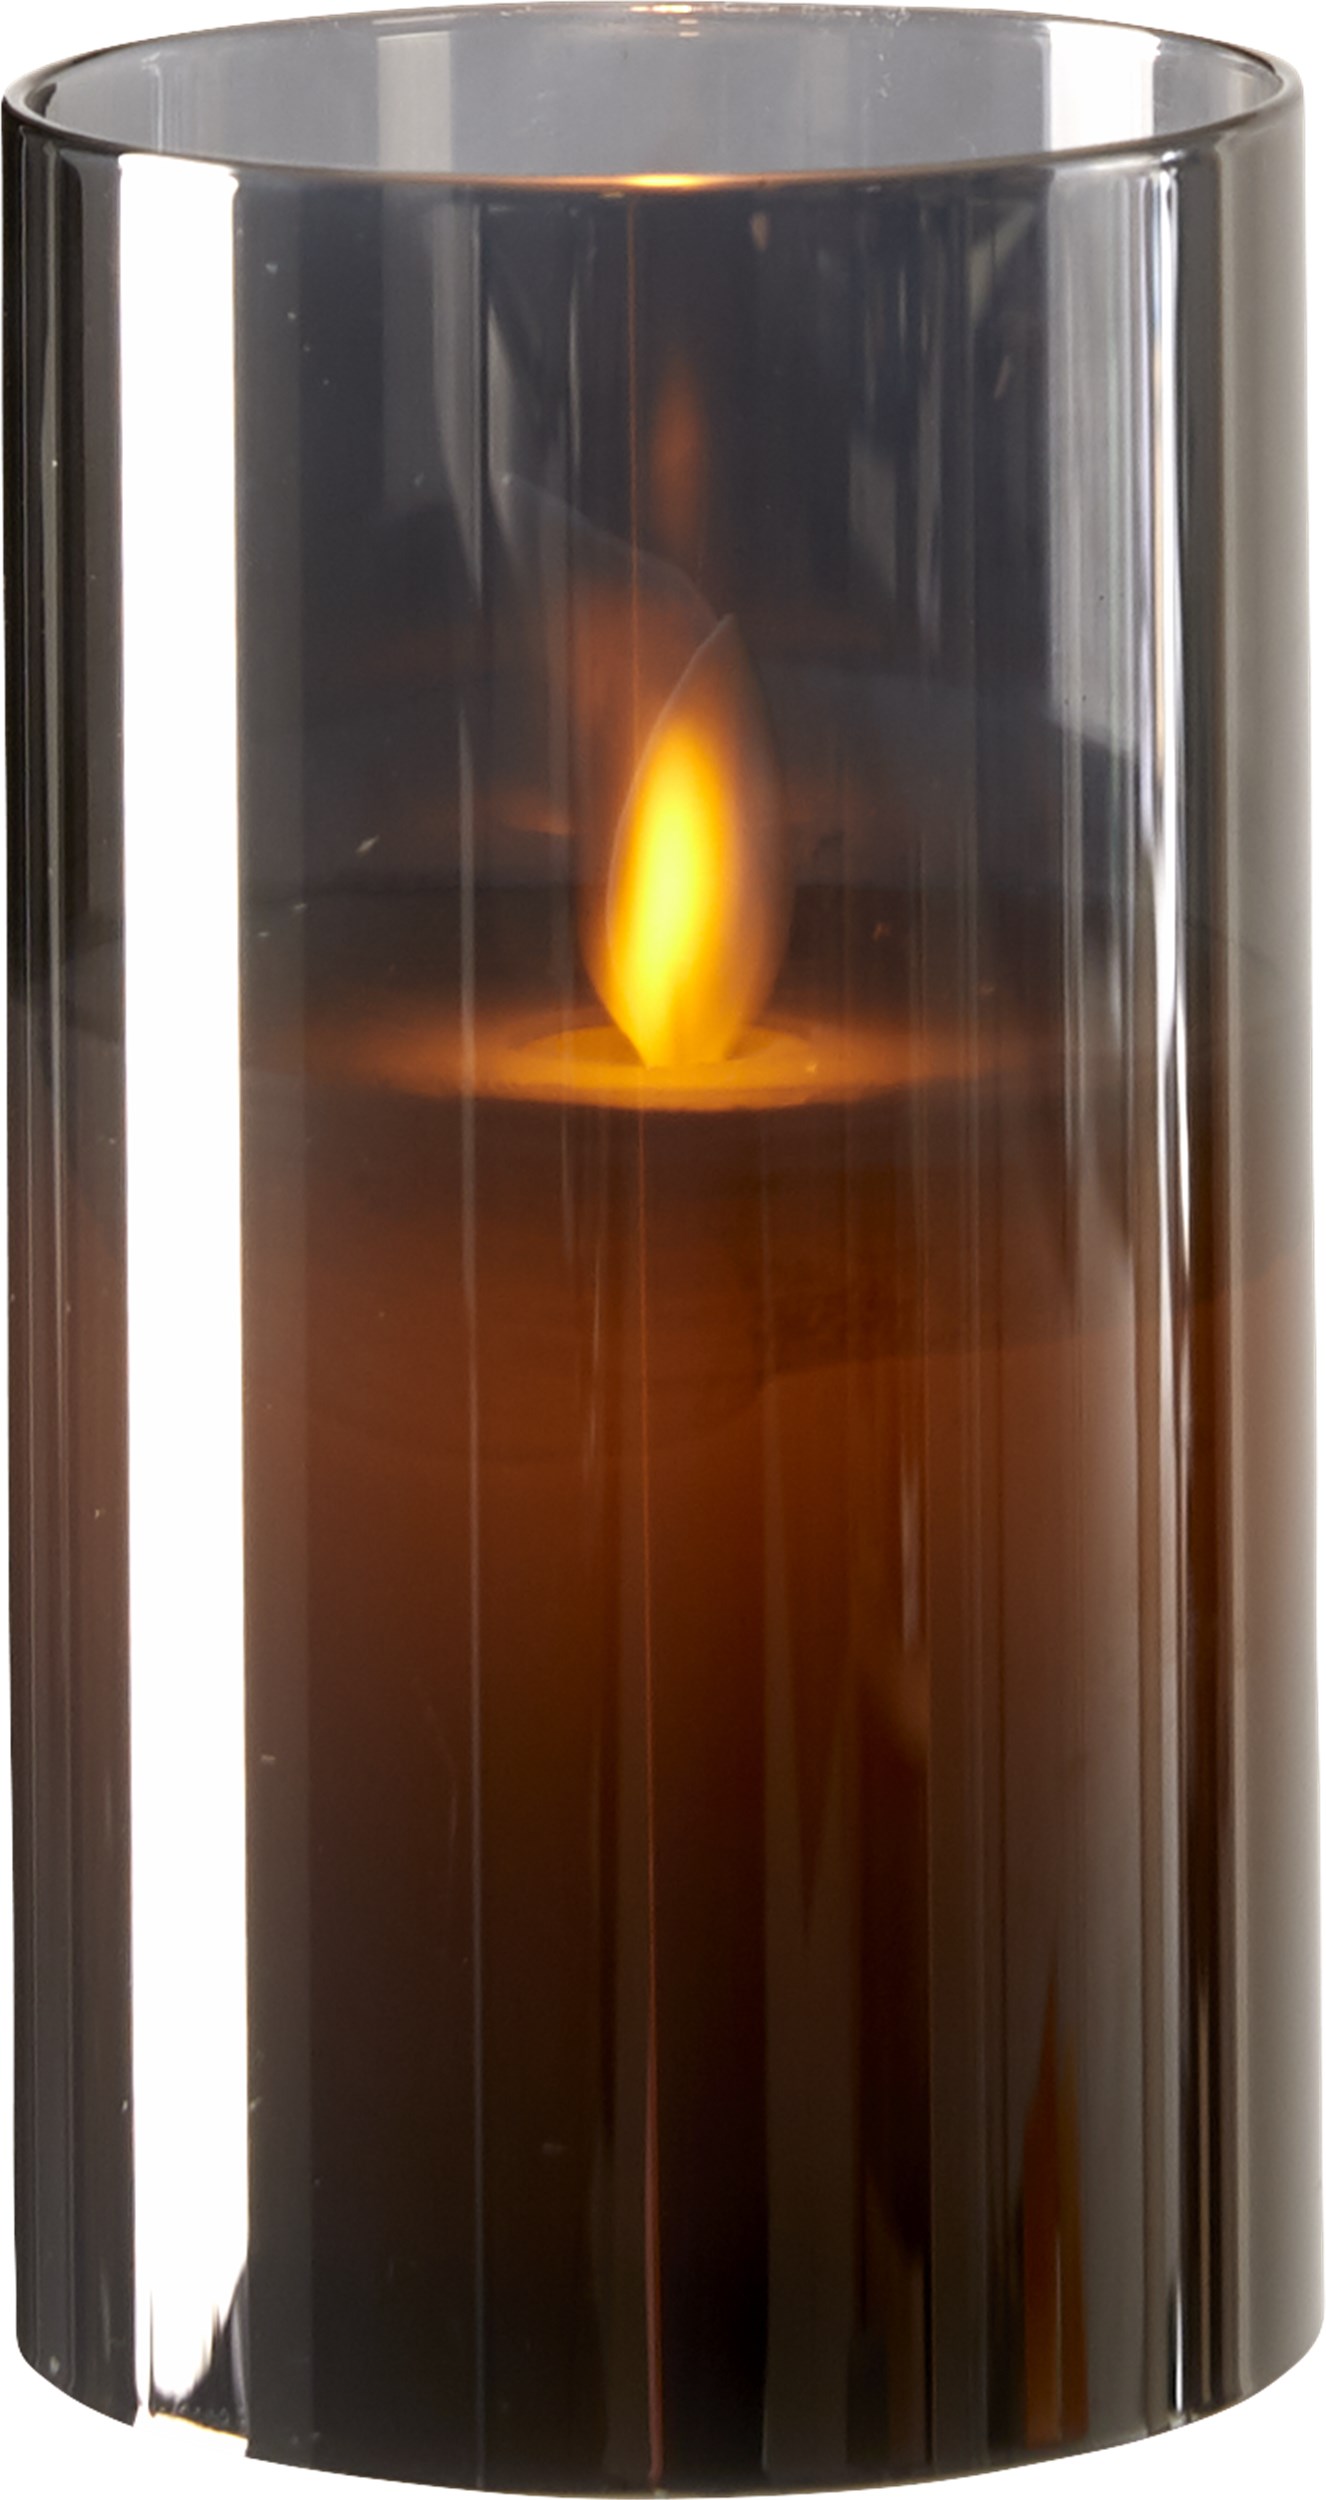 Joy LED Lanterne 13 x 8 cm - Smoke glas med LED lys og bevægelig flamme